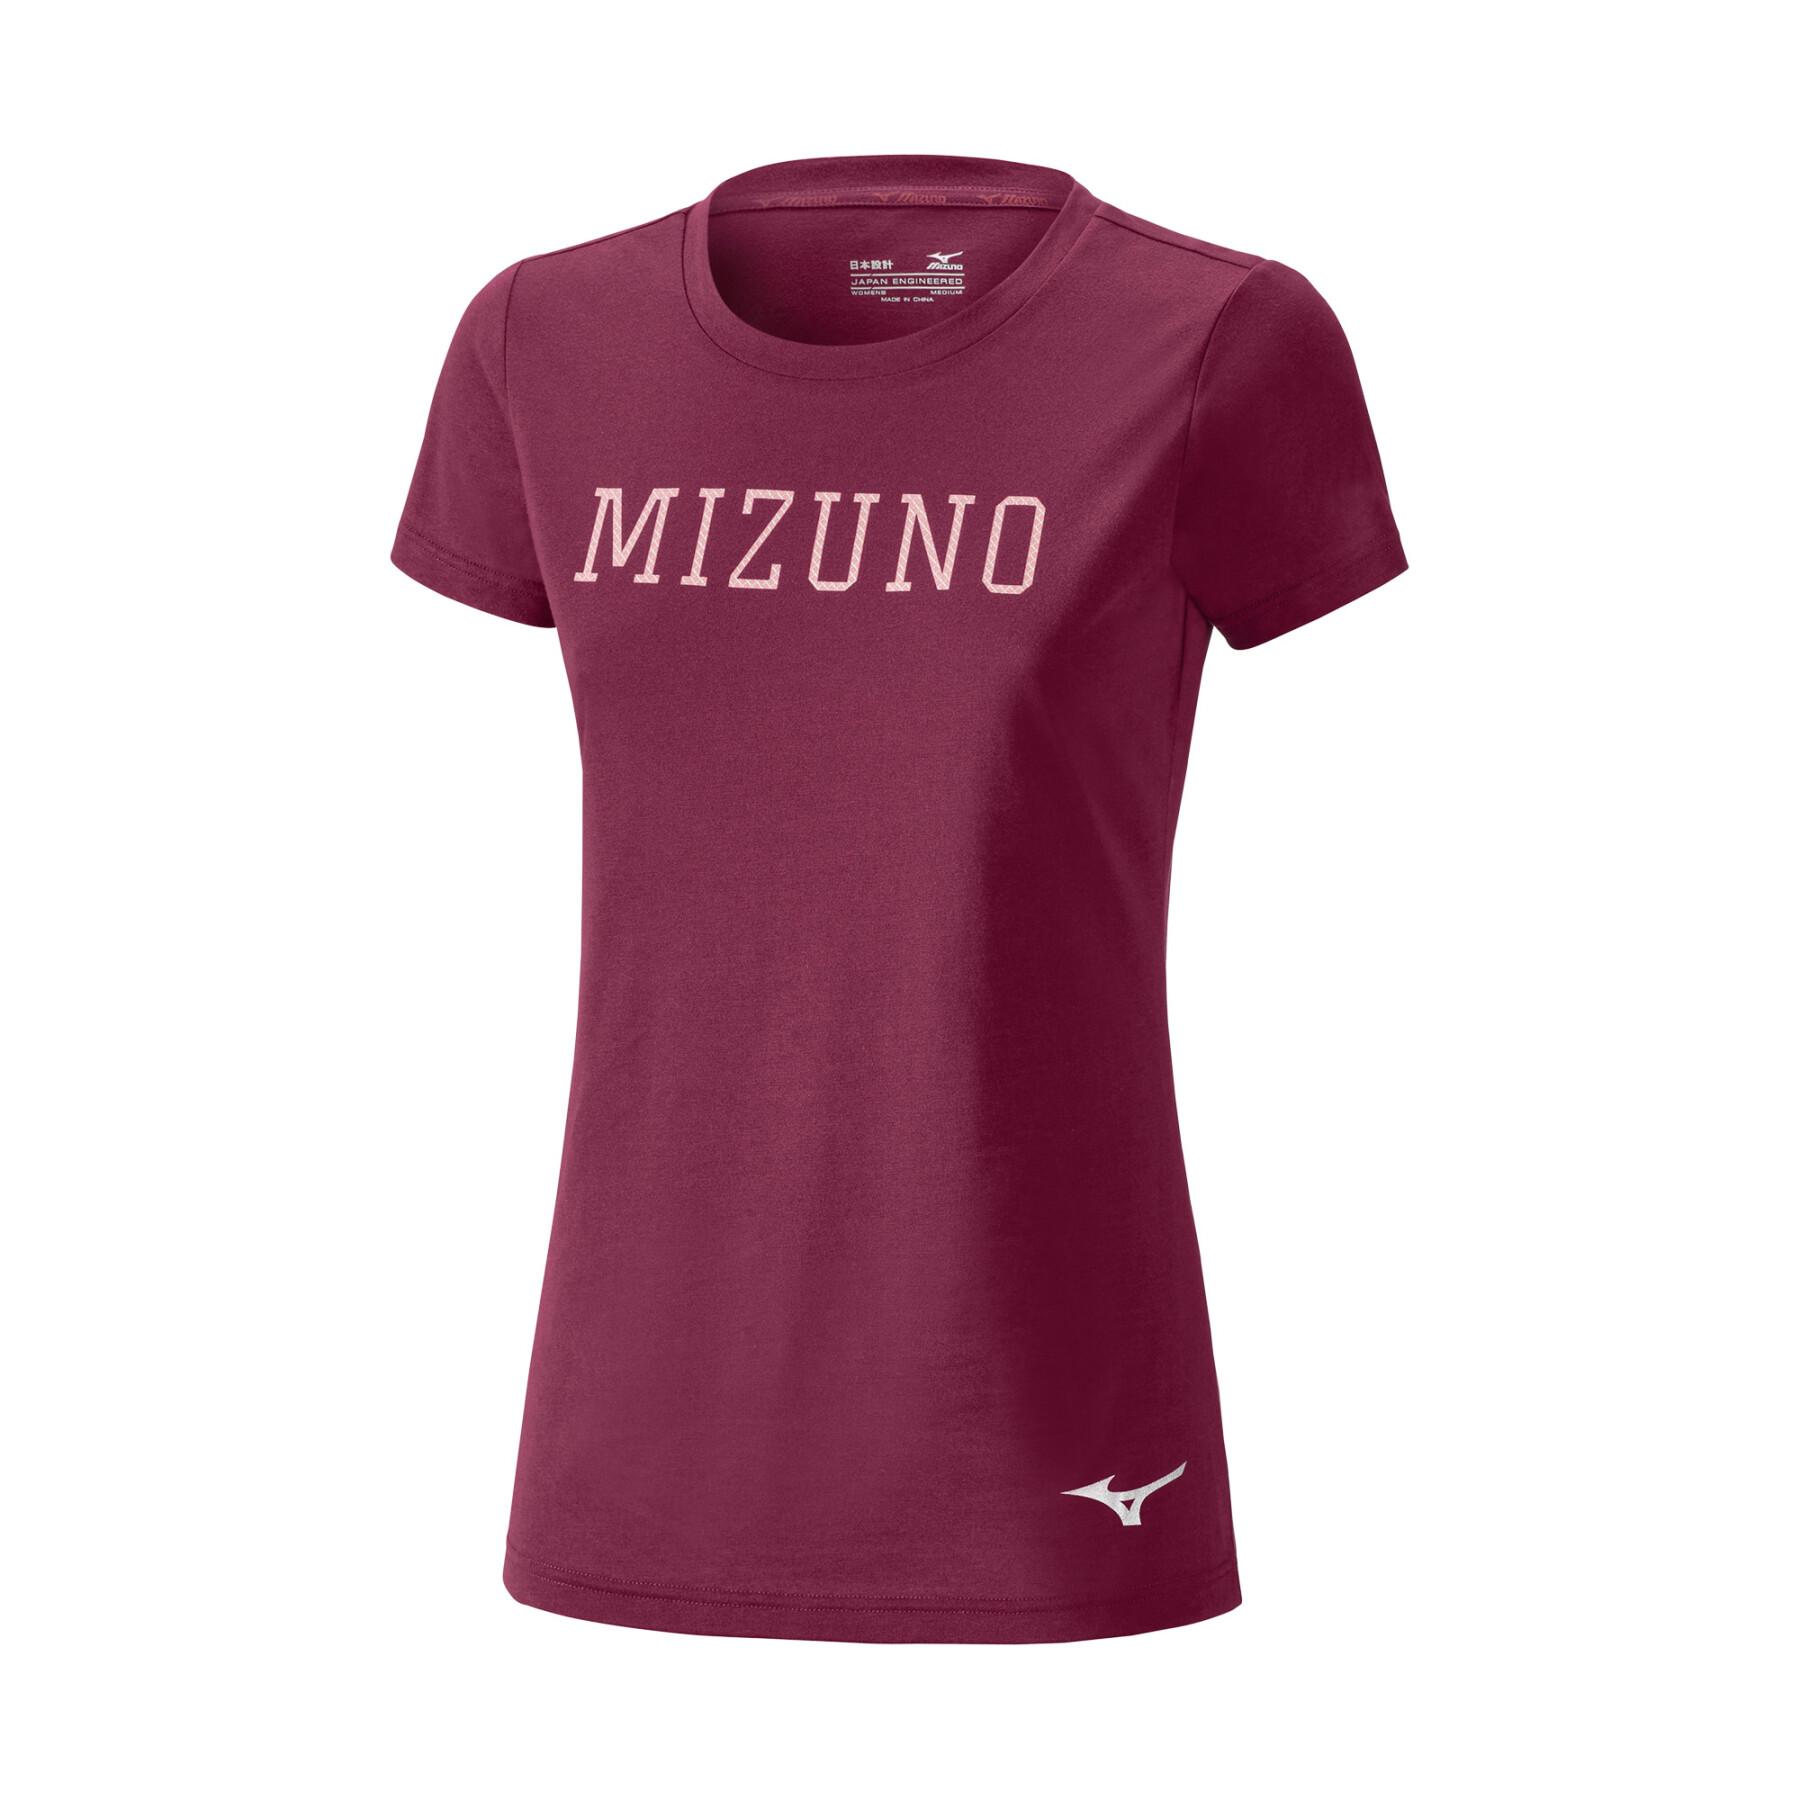 Camiseta feminina Mizuno Heritage Graphic